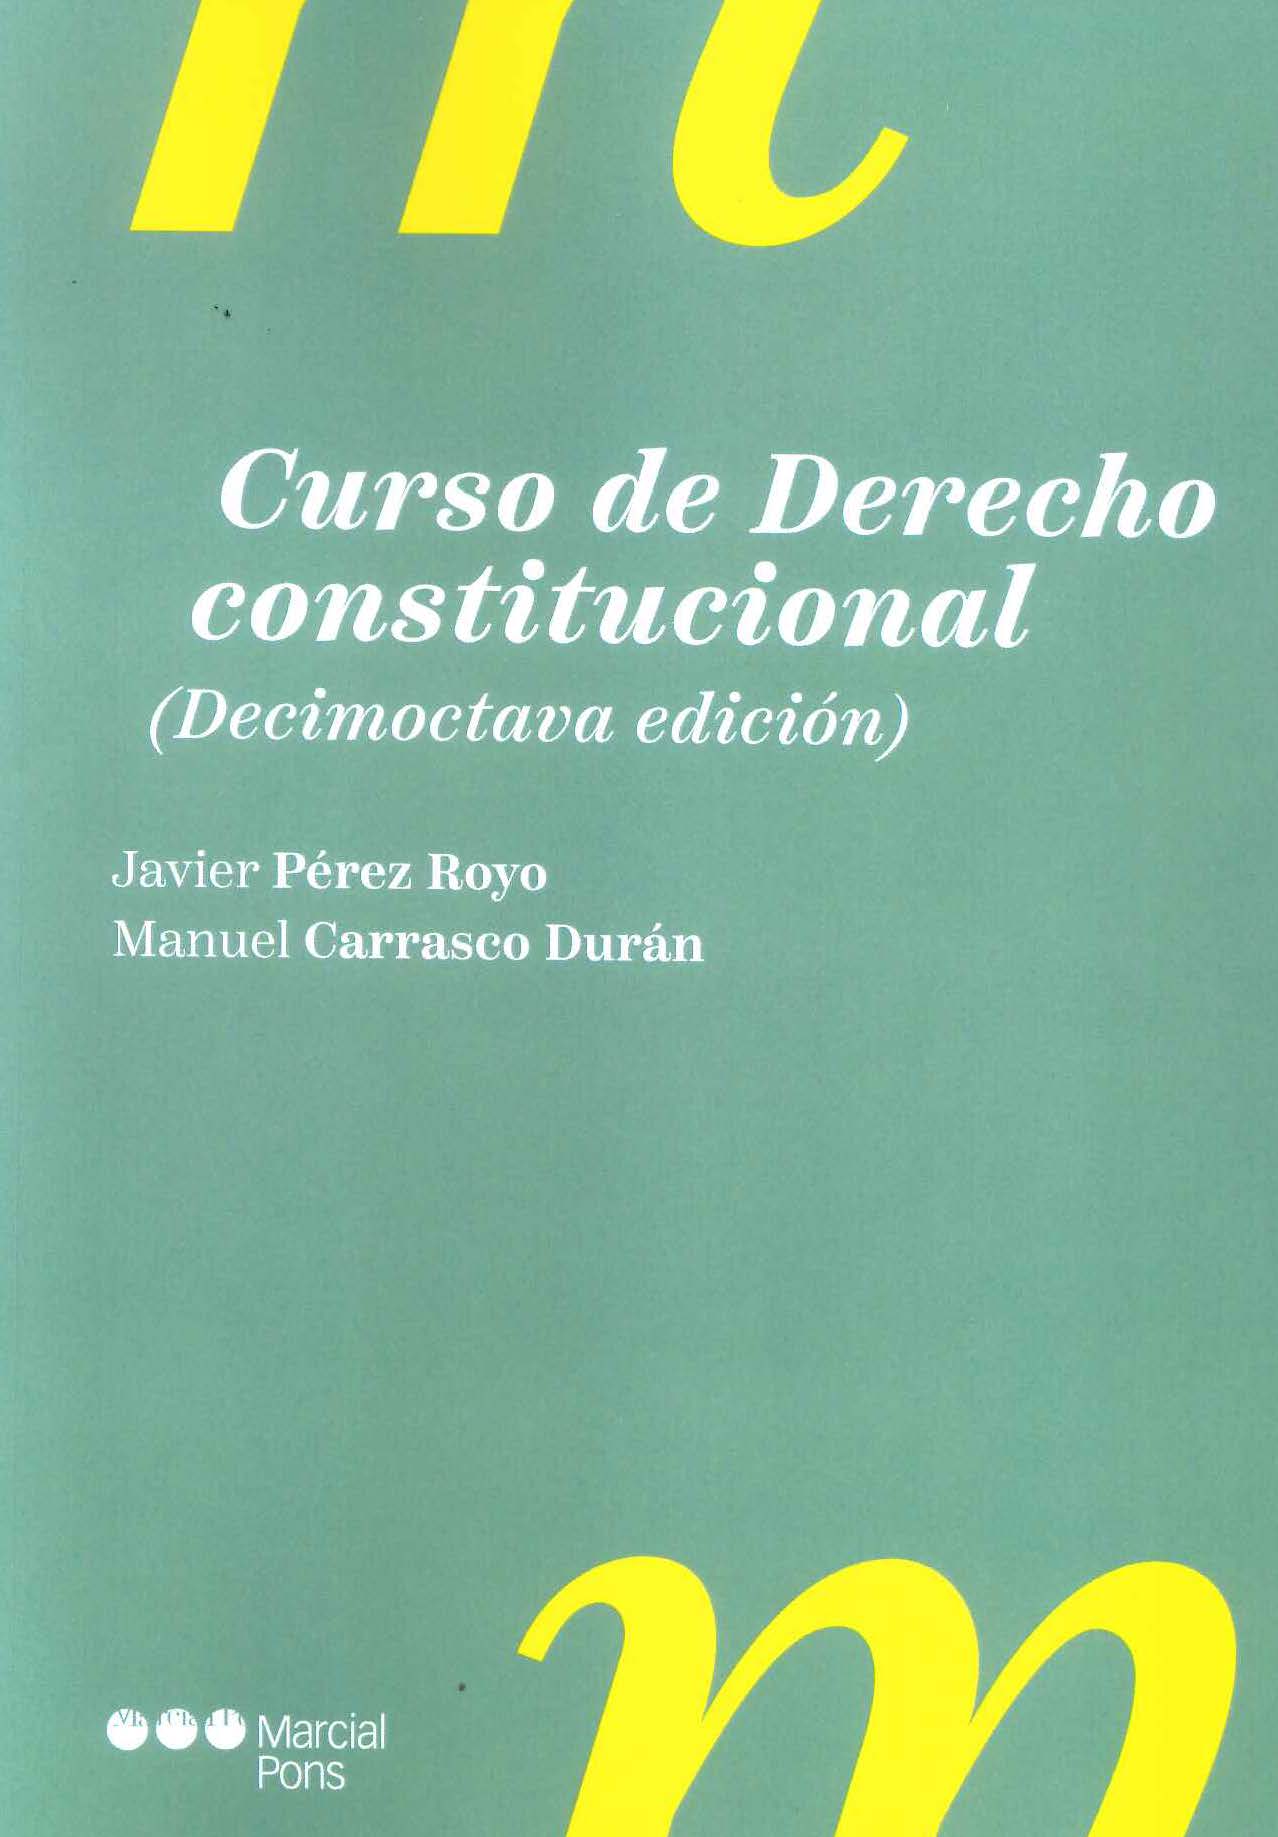 PEREZ ROYO. Curso de Derecho constitucional. Marcial Pons, 2023